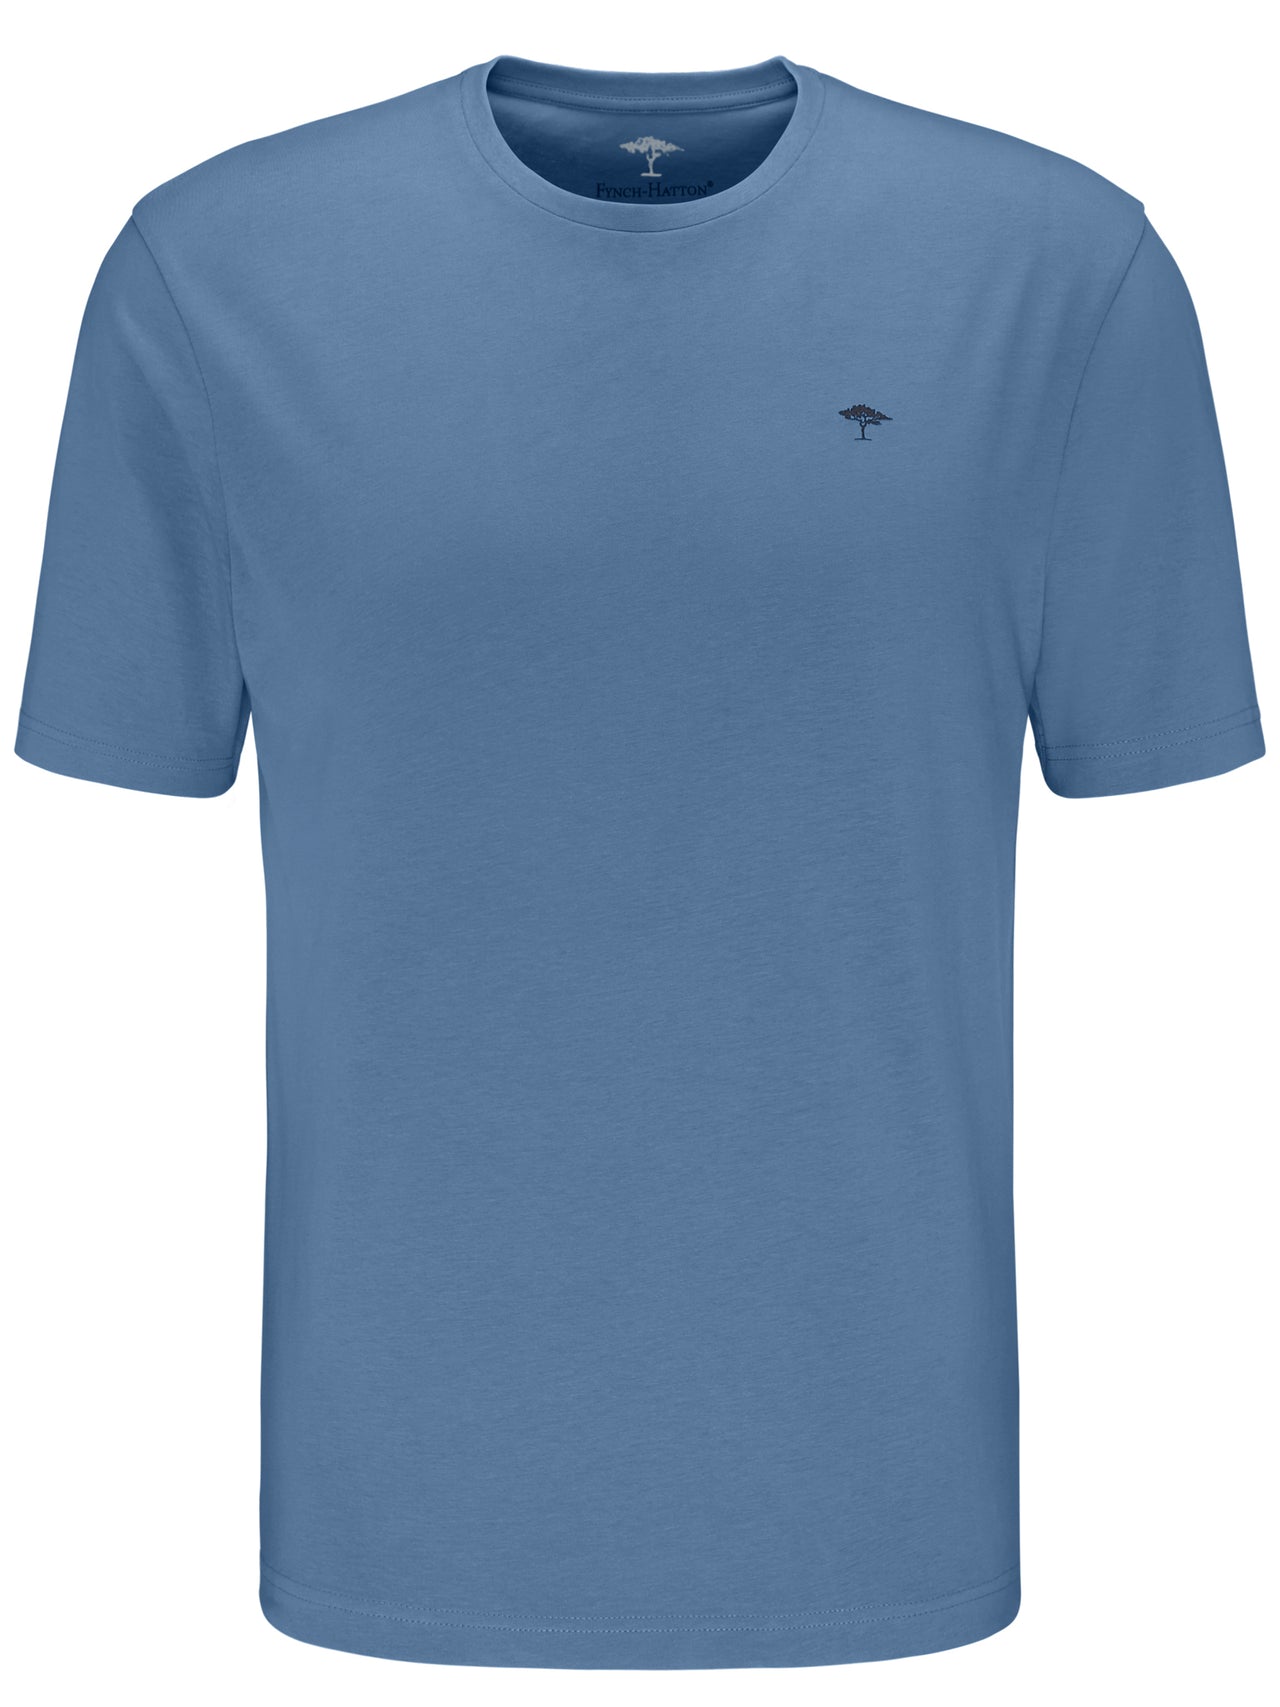 Fynch Hatton Pacific Blue Round Neck T-shirt